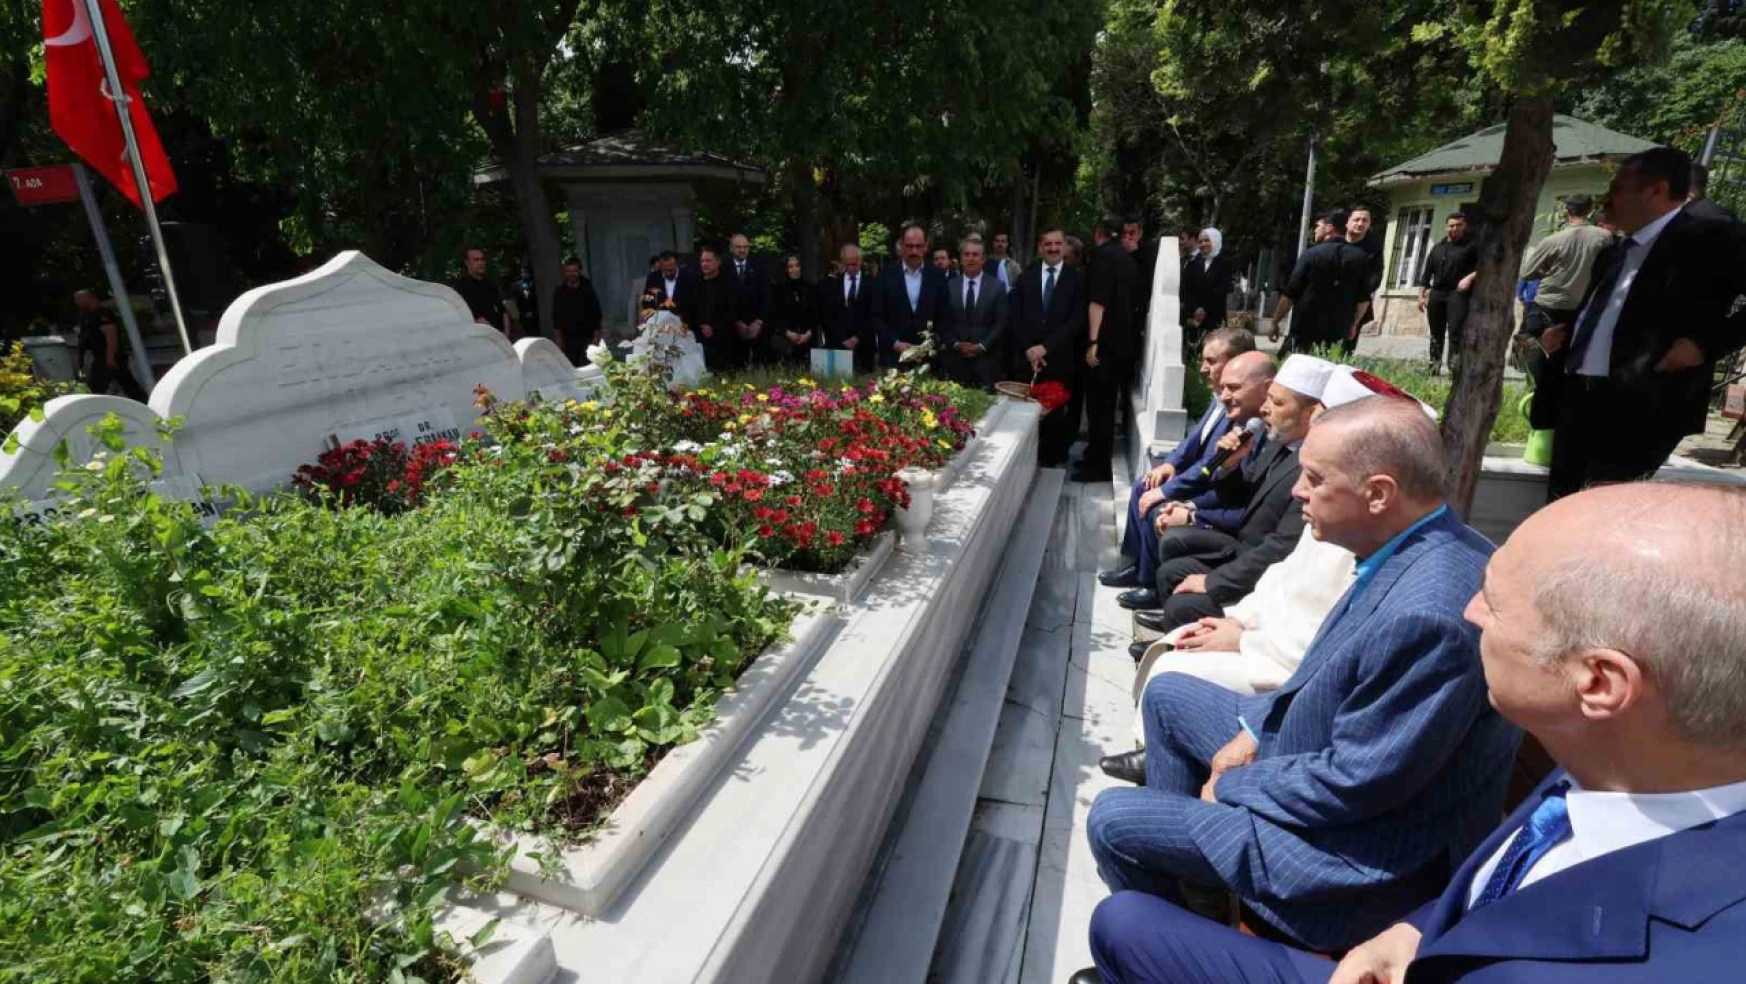 Cumhurbaşkanı Erdoğan, Necmettin Erbakan'ın kabrini ziyaret etti